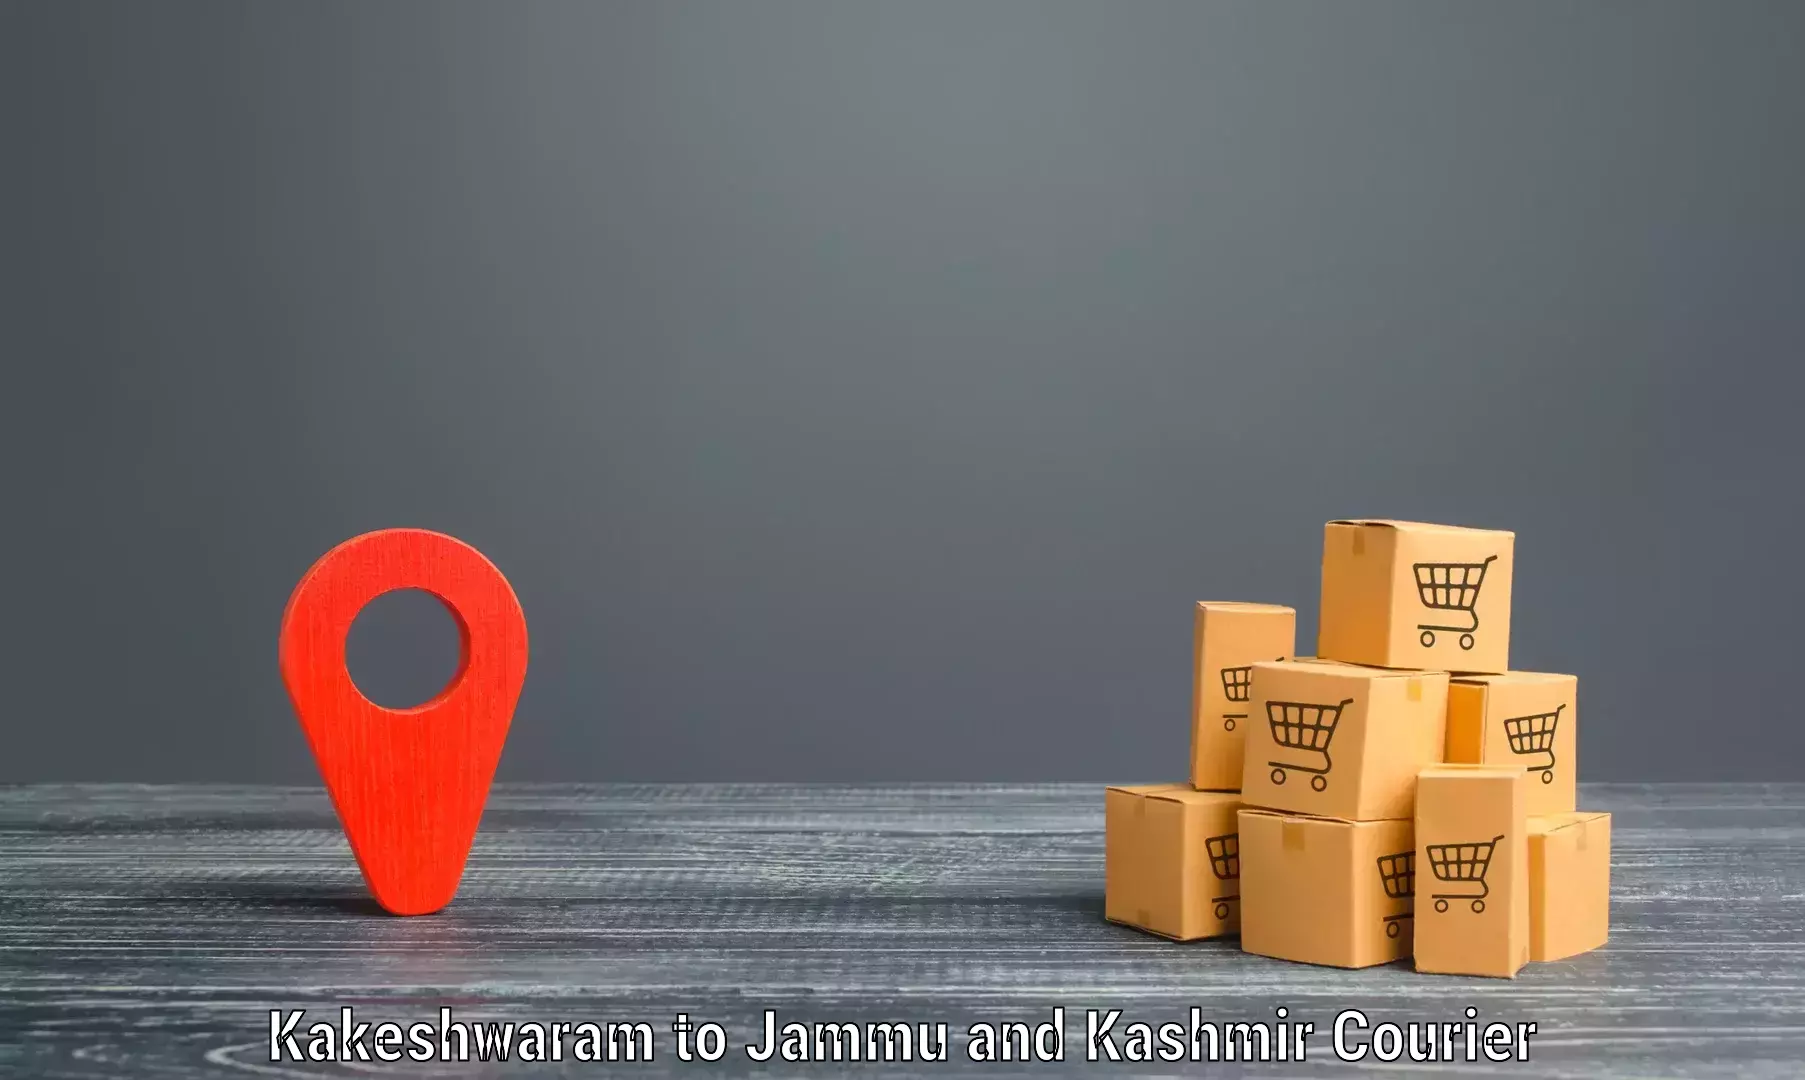 24-hour courier service Kakeshwaram to Kishtwar